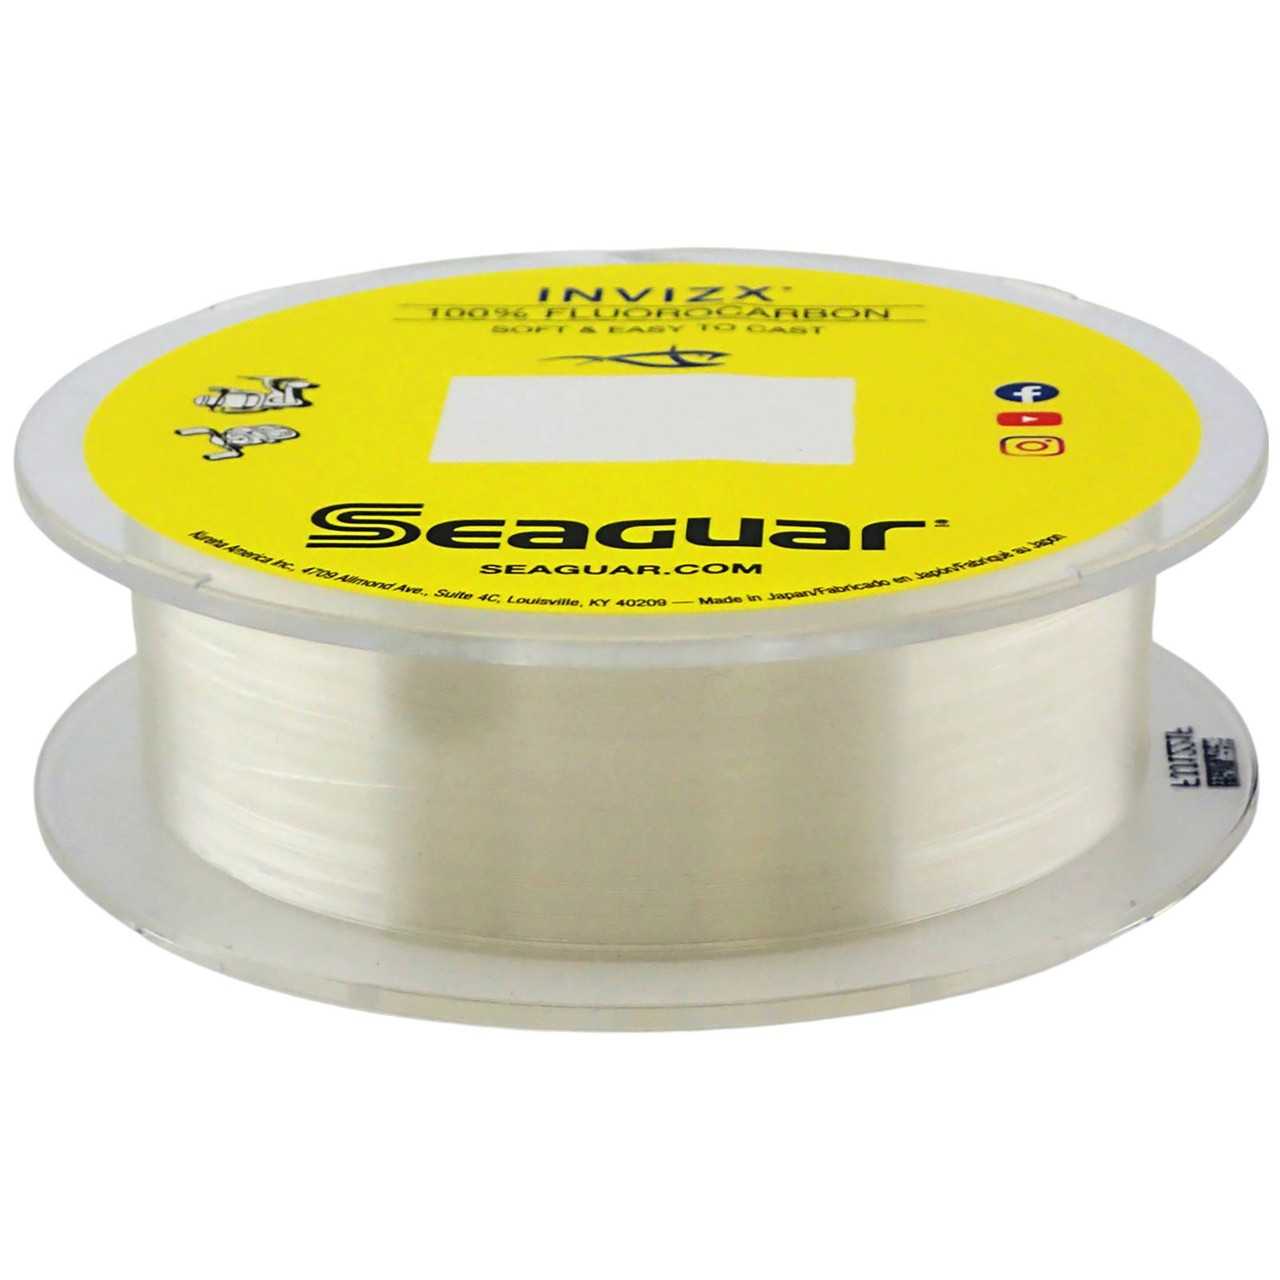 Seaguar Invizx 100% Fluorocarbon Line, 8 lb, 200 yds